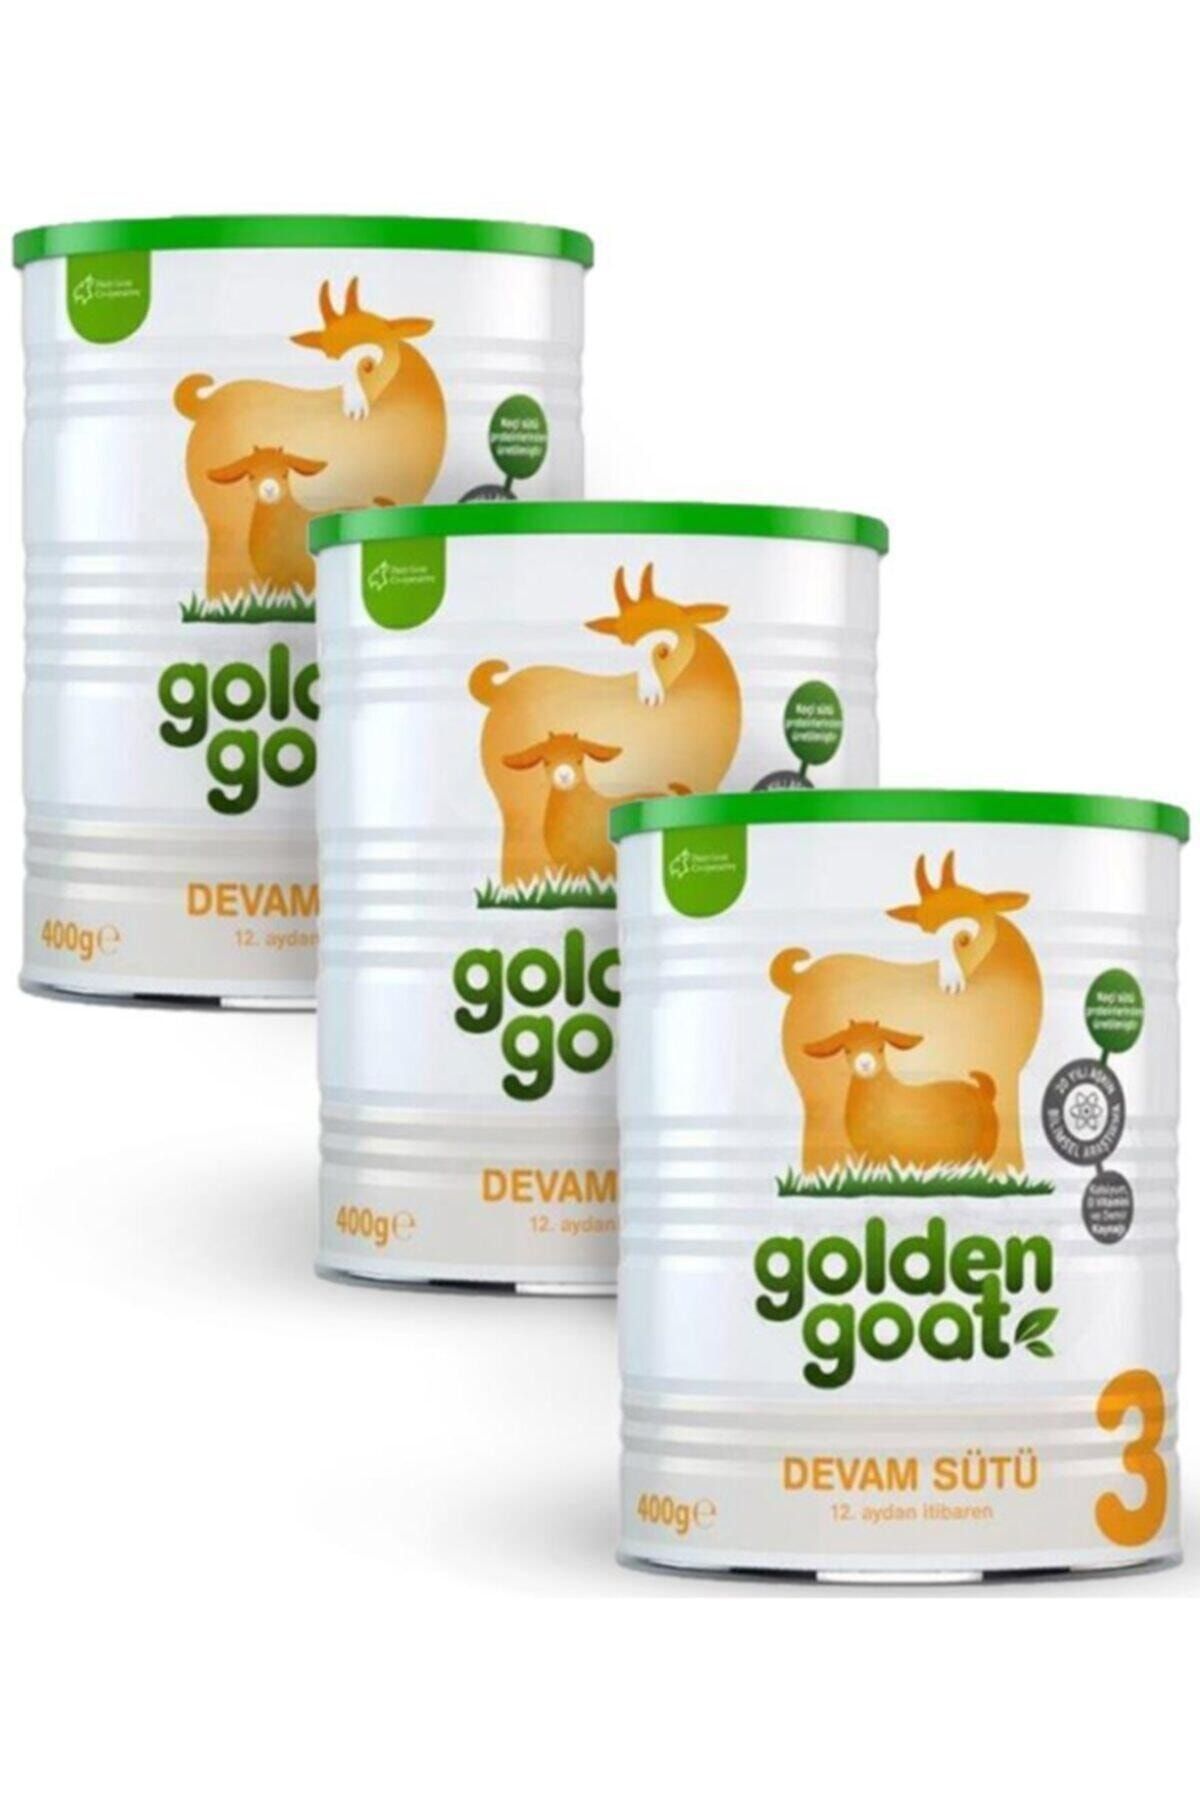 Golden Goat 3 400gr Keçi Sütlü | 12. Aydan Itibaren Devam Sütü X 3 Adet